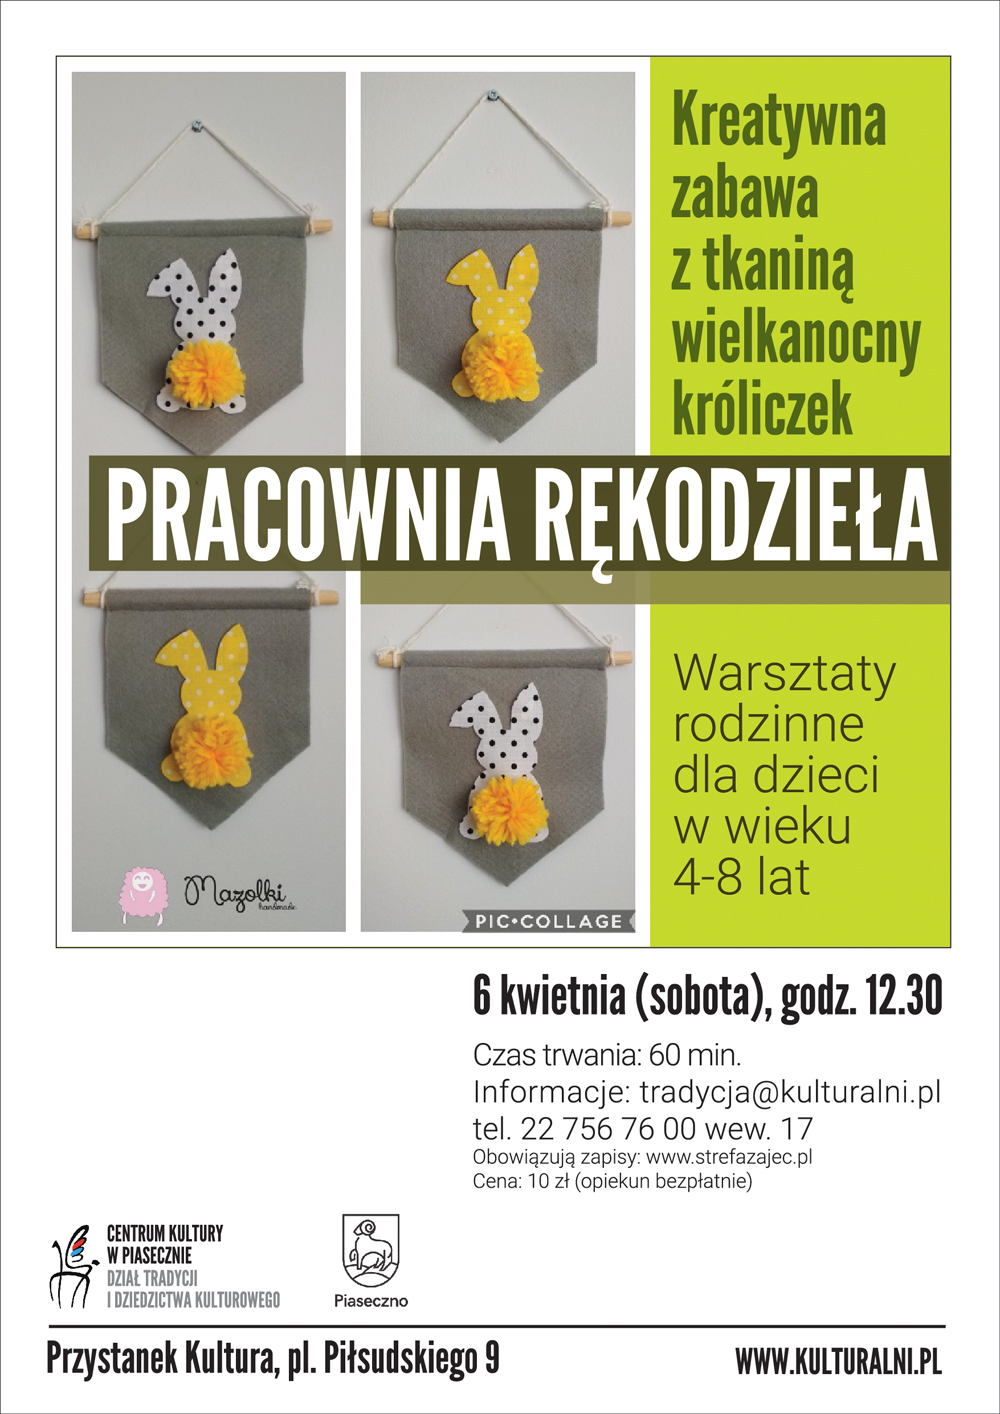 Kreatywna zabawa z tkaniną - wielkanocny króliczek - warsztaty dla dzieci Piaseczno